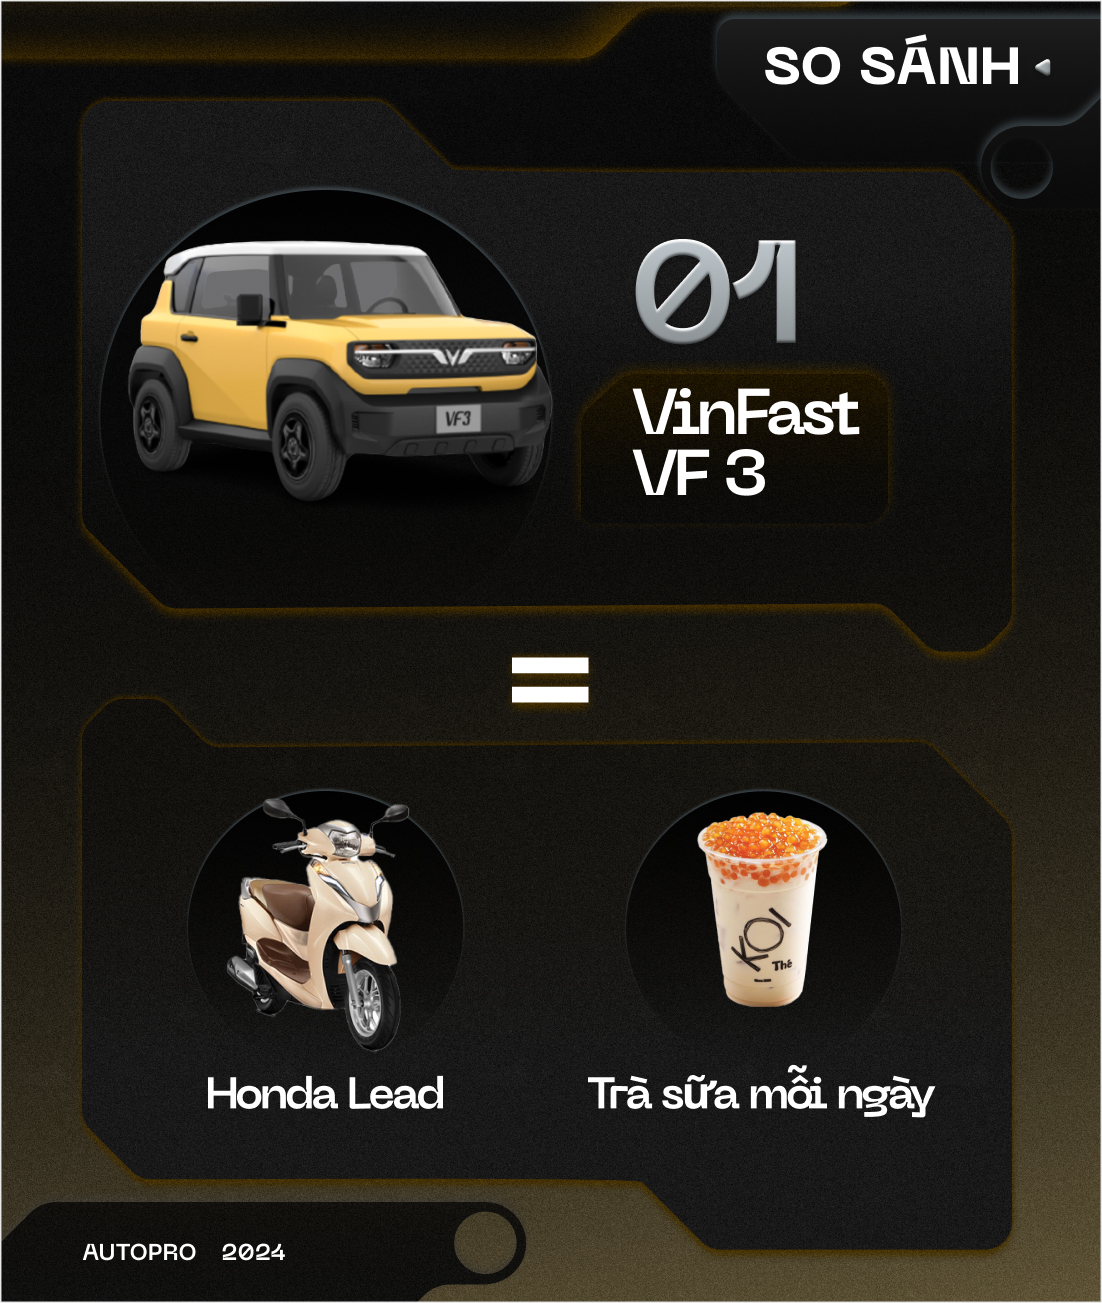 Nhịn uống trà sữa mỗi tháng, bạn có thể mua được VinFast VF 3 bằng cách này!- Ảnh 1.